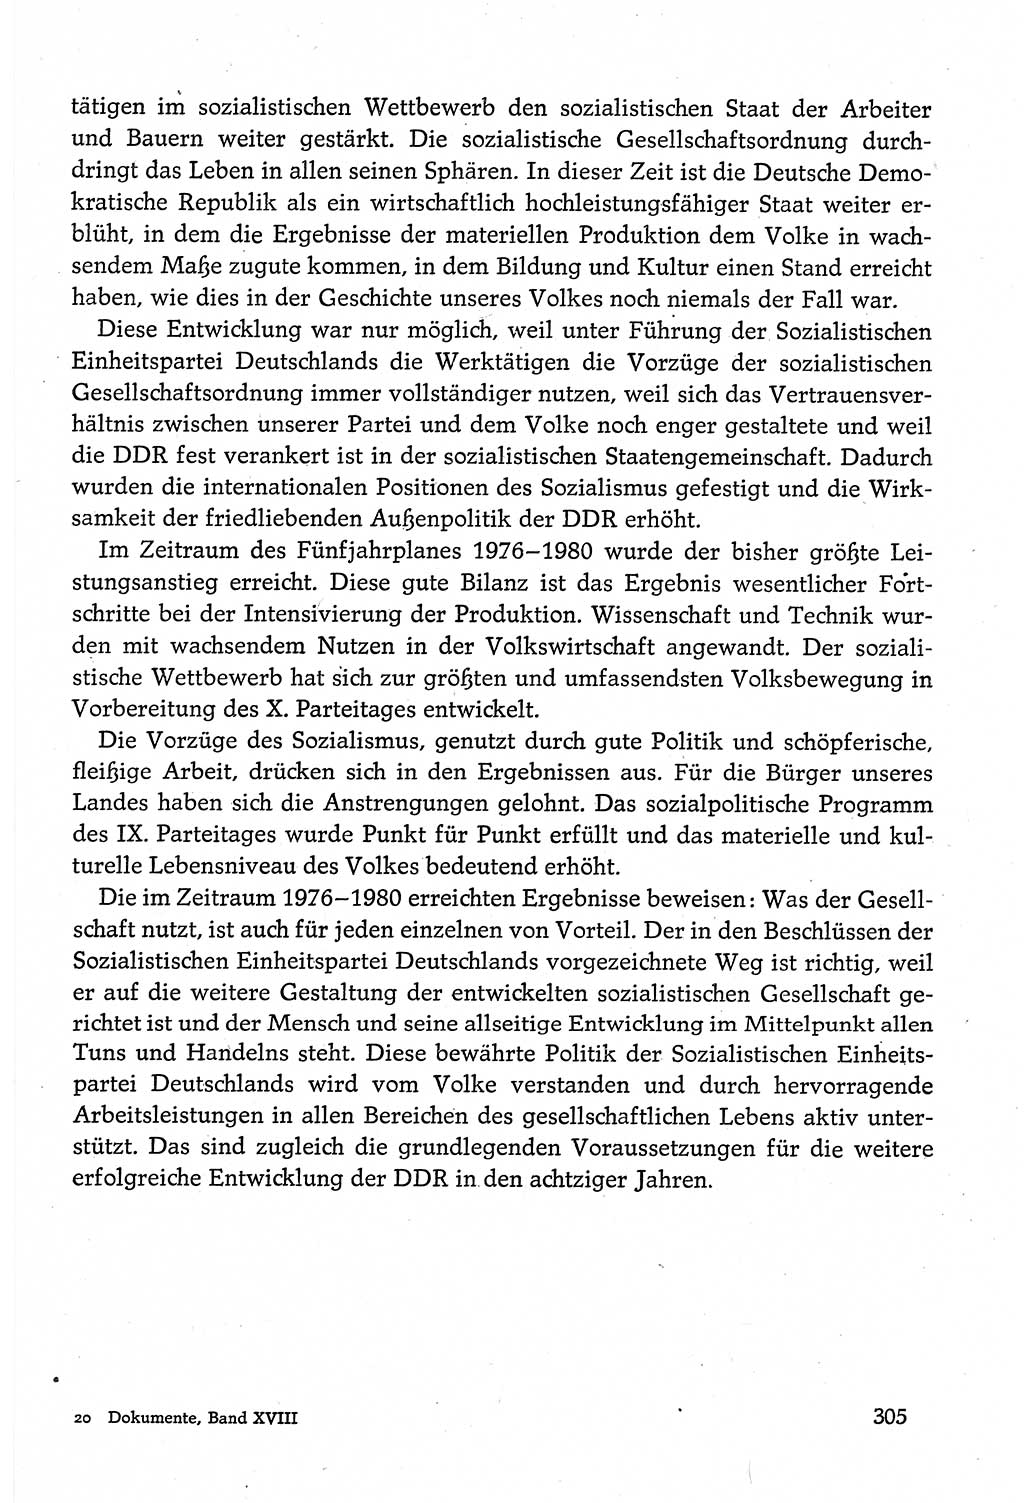 Dokumente der Sozialistischen Einheitspartei Deutschlands (SED) [Deutsche Demokratische Republik (DDR)] 1980-1981, Seite 305 (Dok. SED DDR 1980-1981, S. 305)